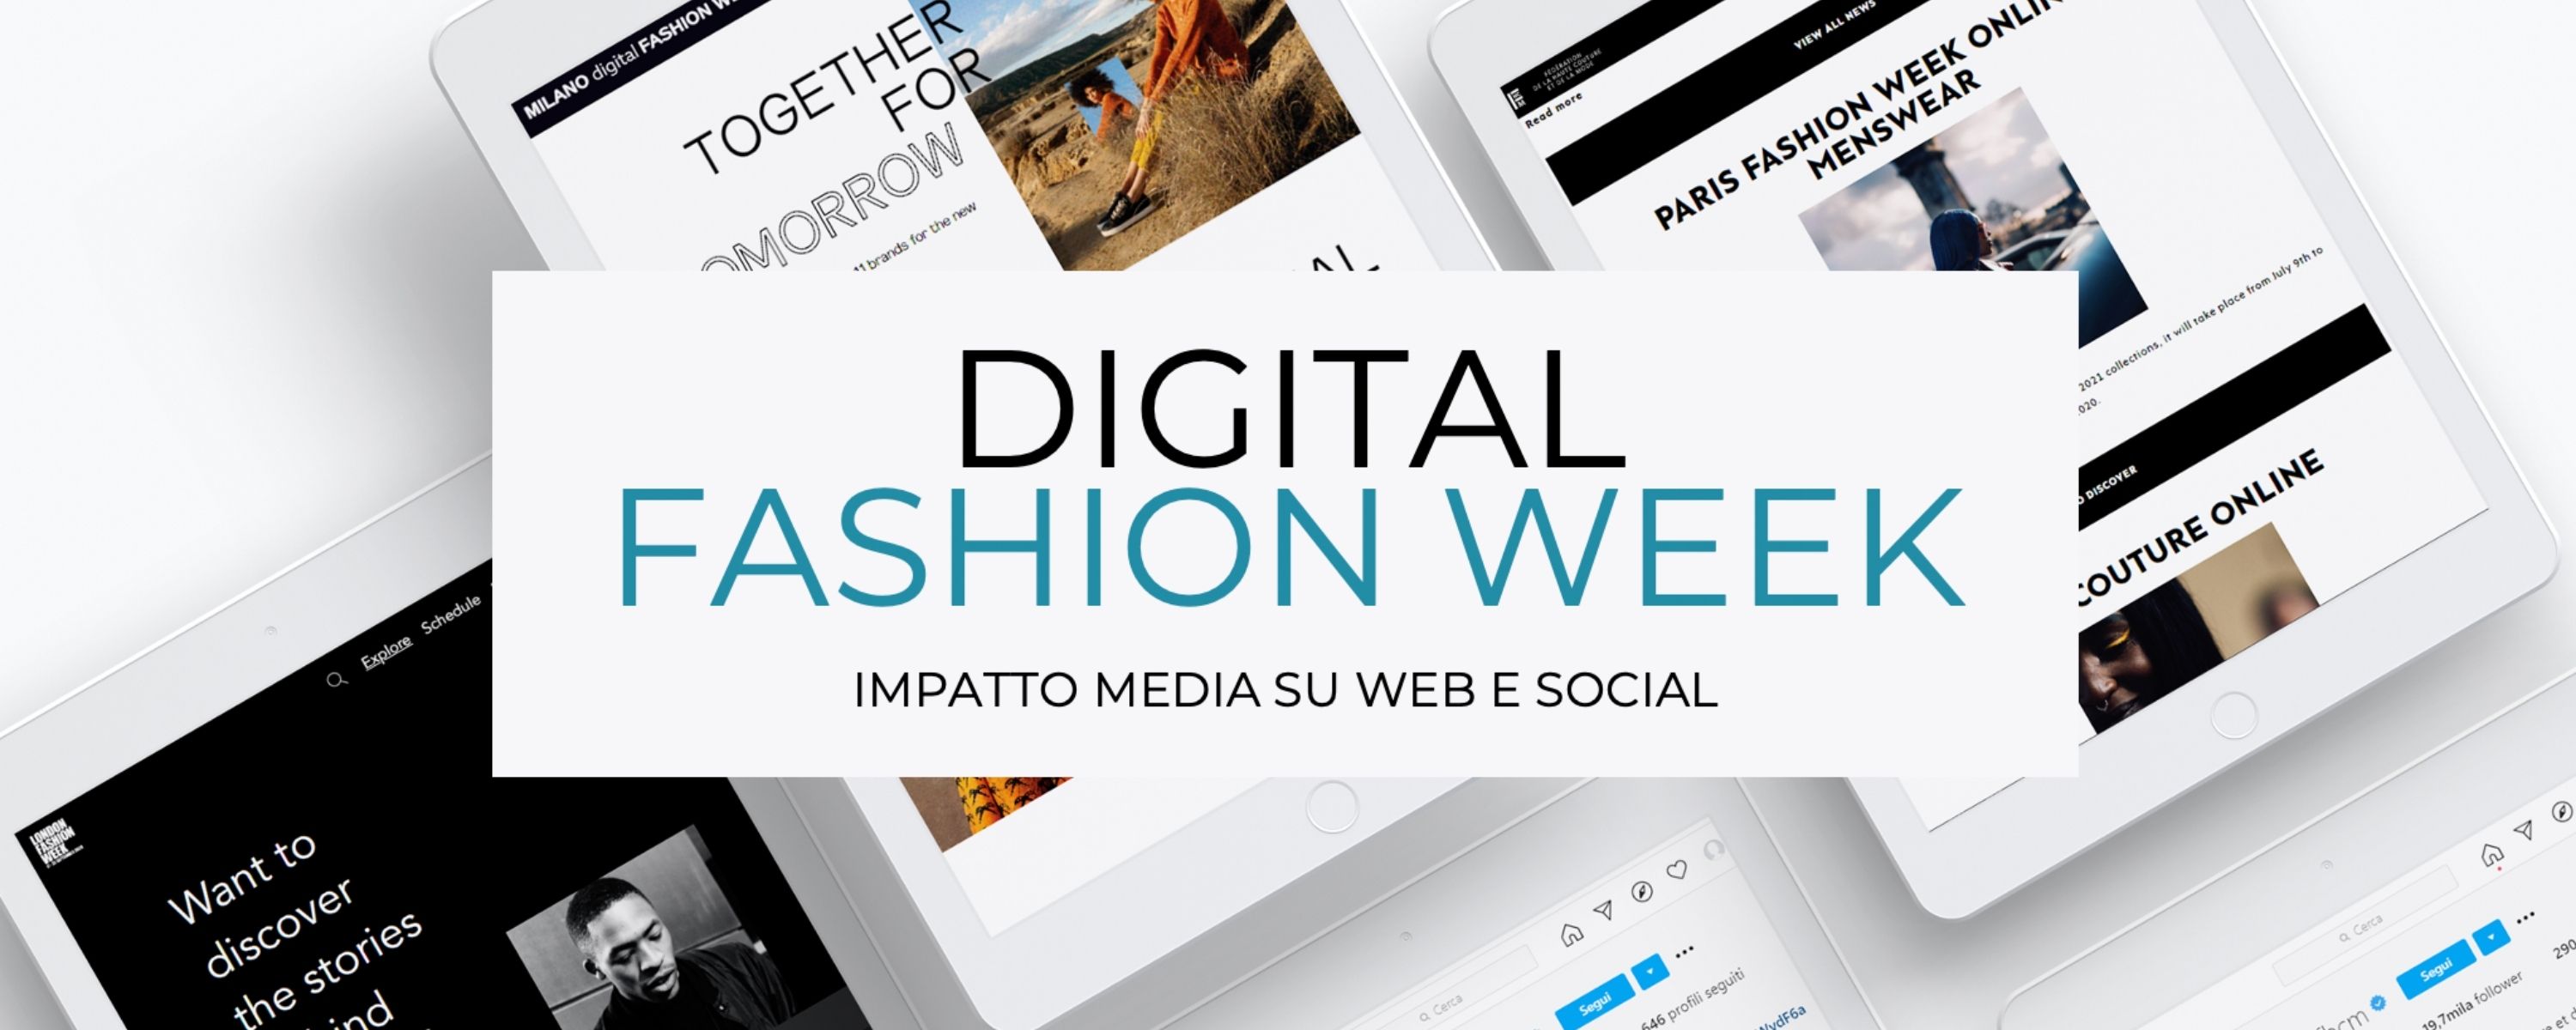 digital fashion week